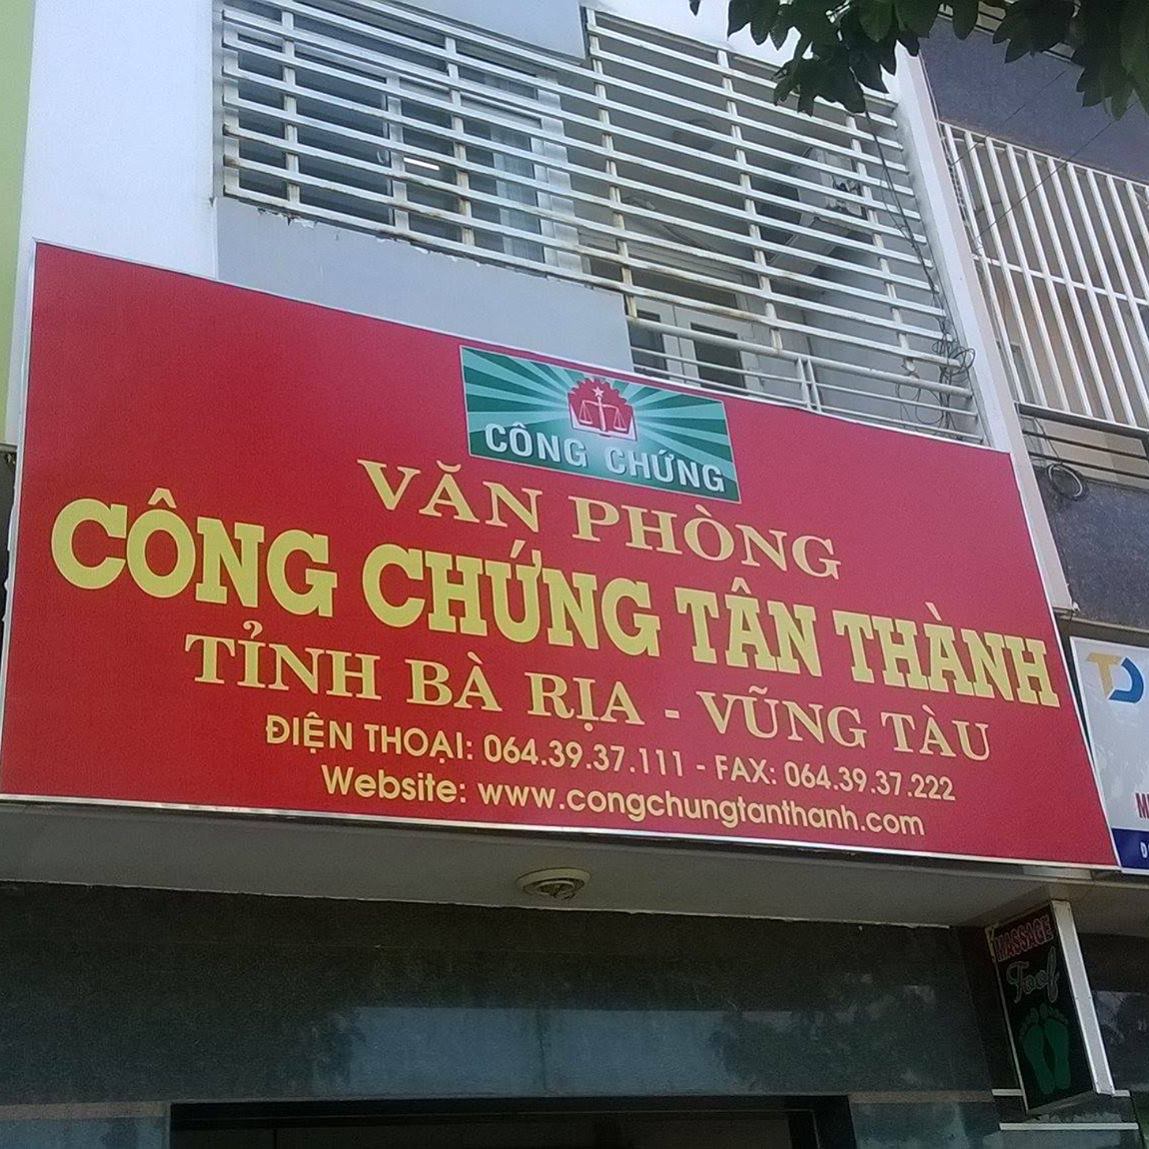 Văn phòng công chứng Tân Thành